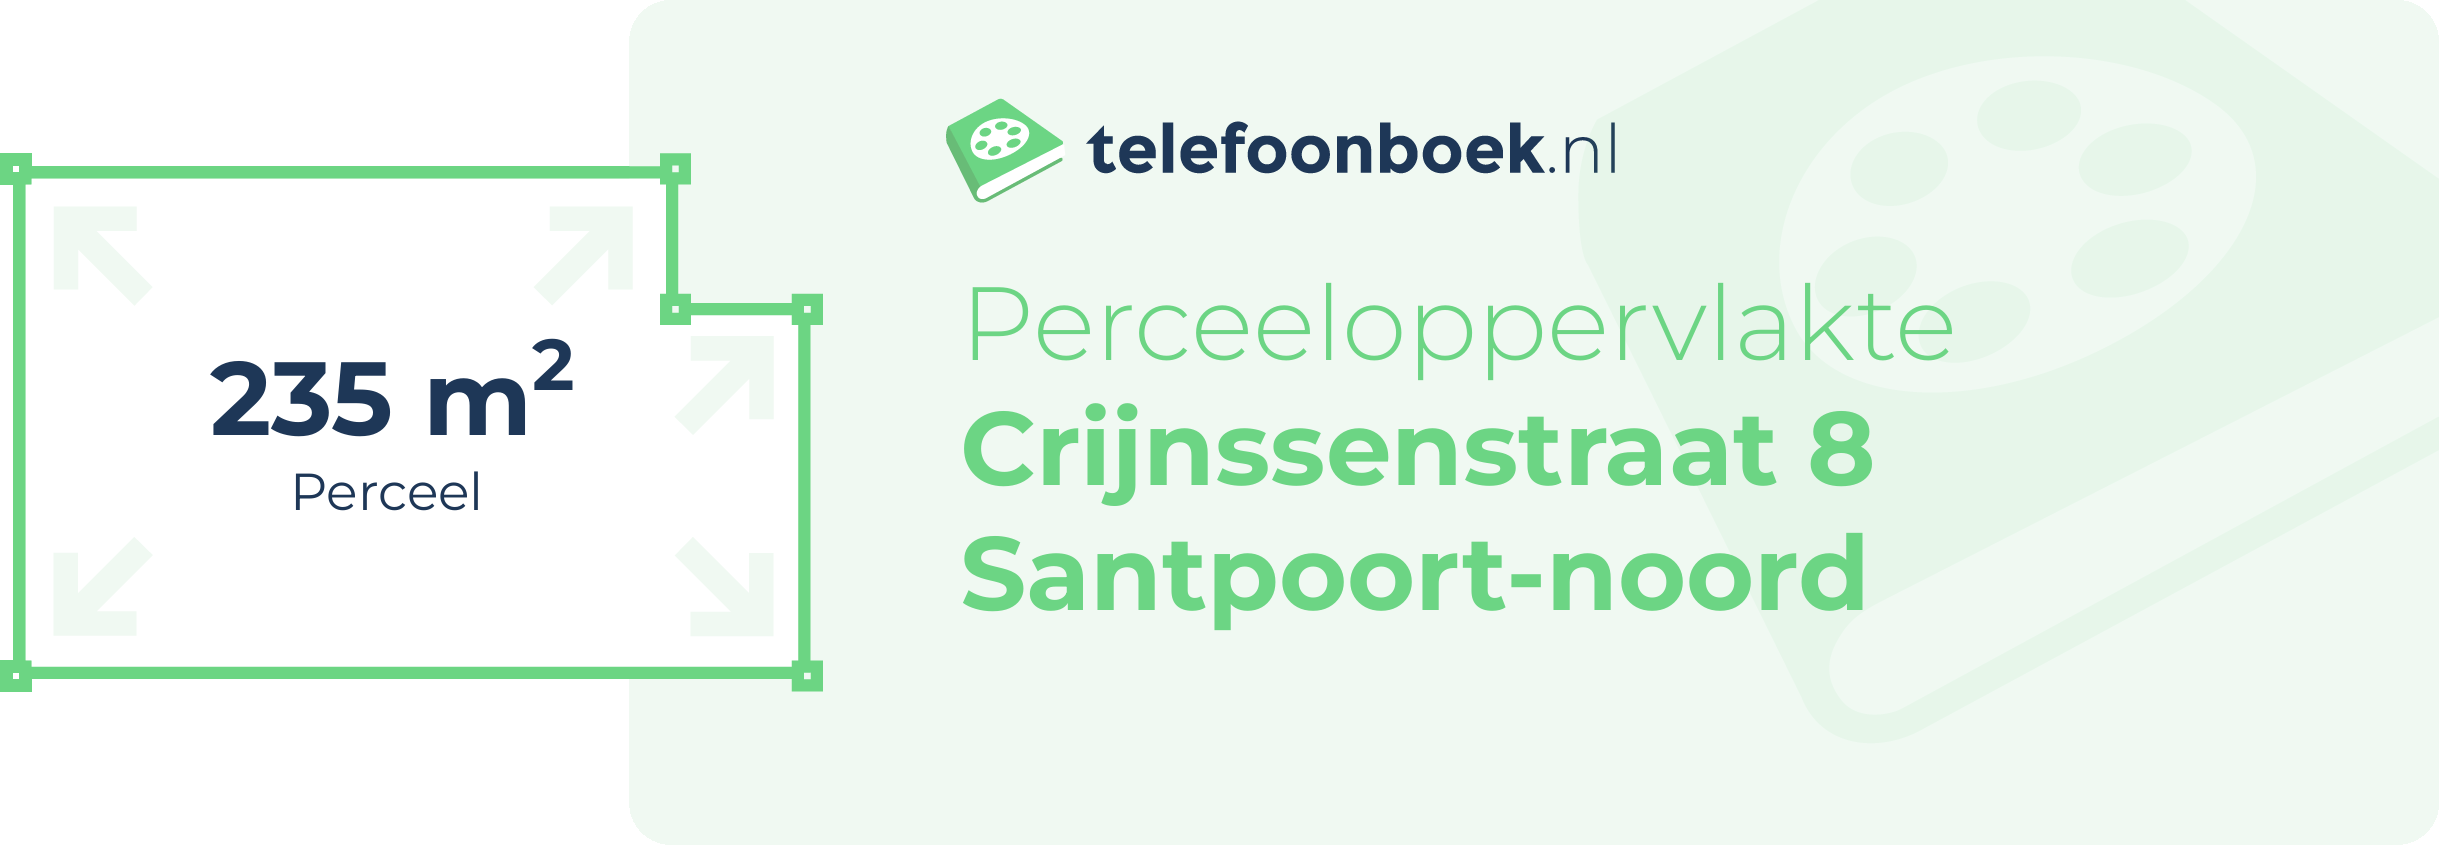 Perceeloppervlakte Crijnssenstraat 8 Santpoort-Noord